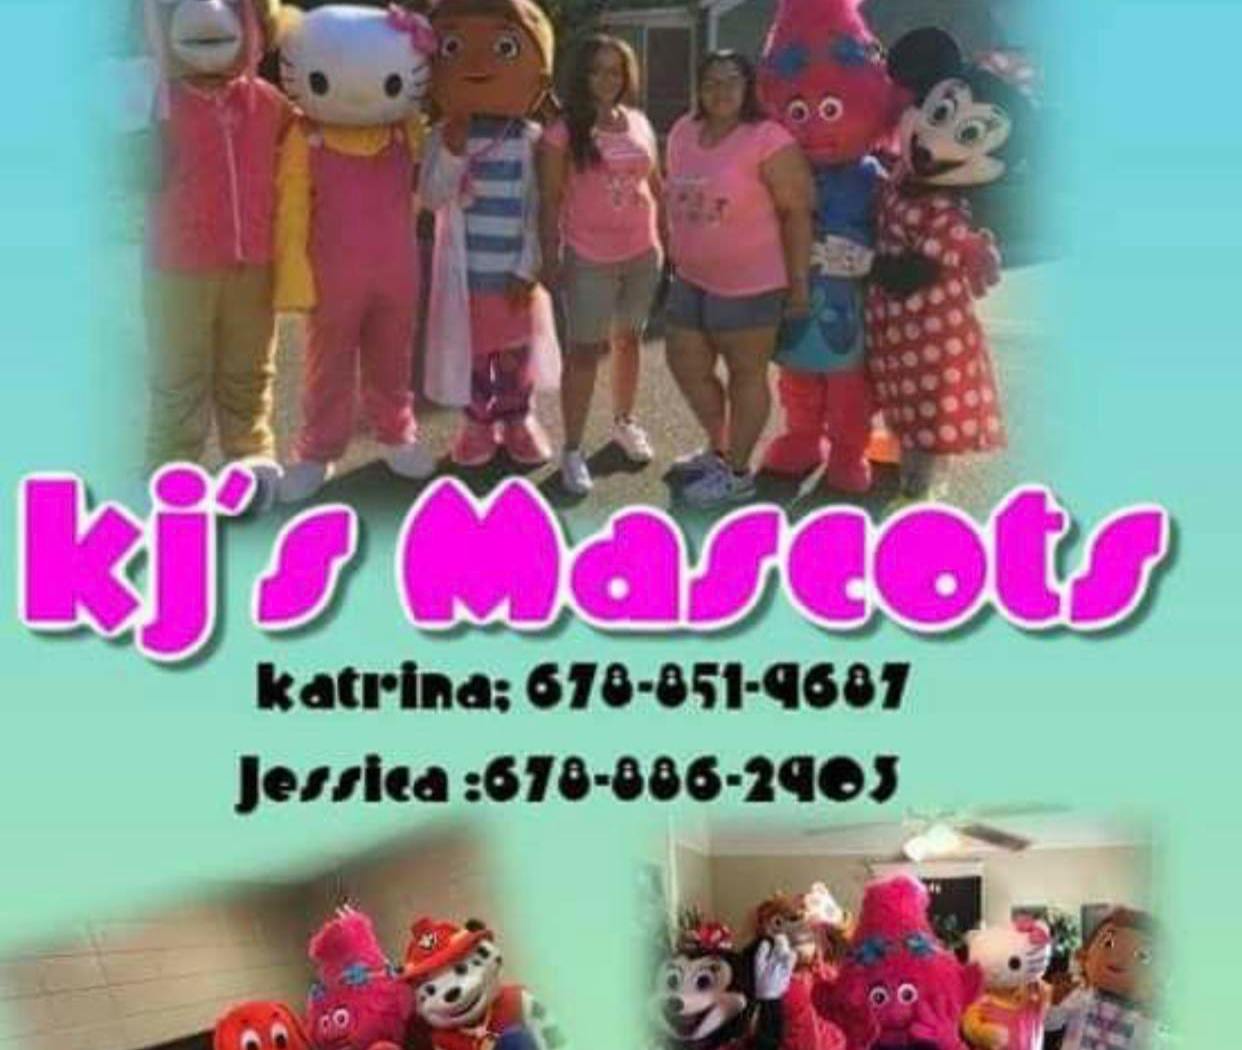 KJ's Mascots